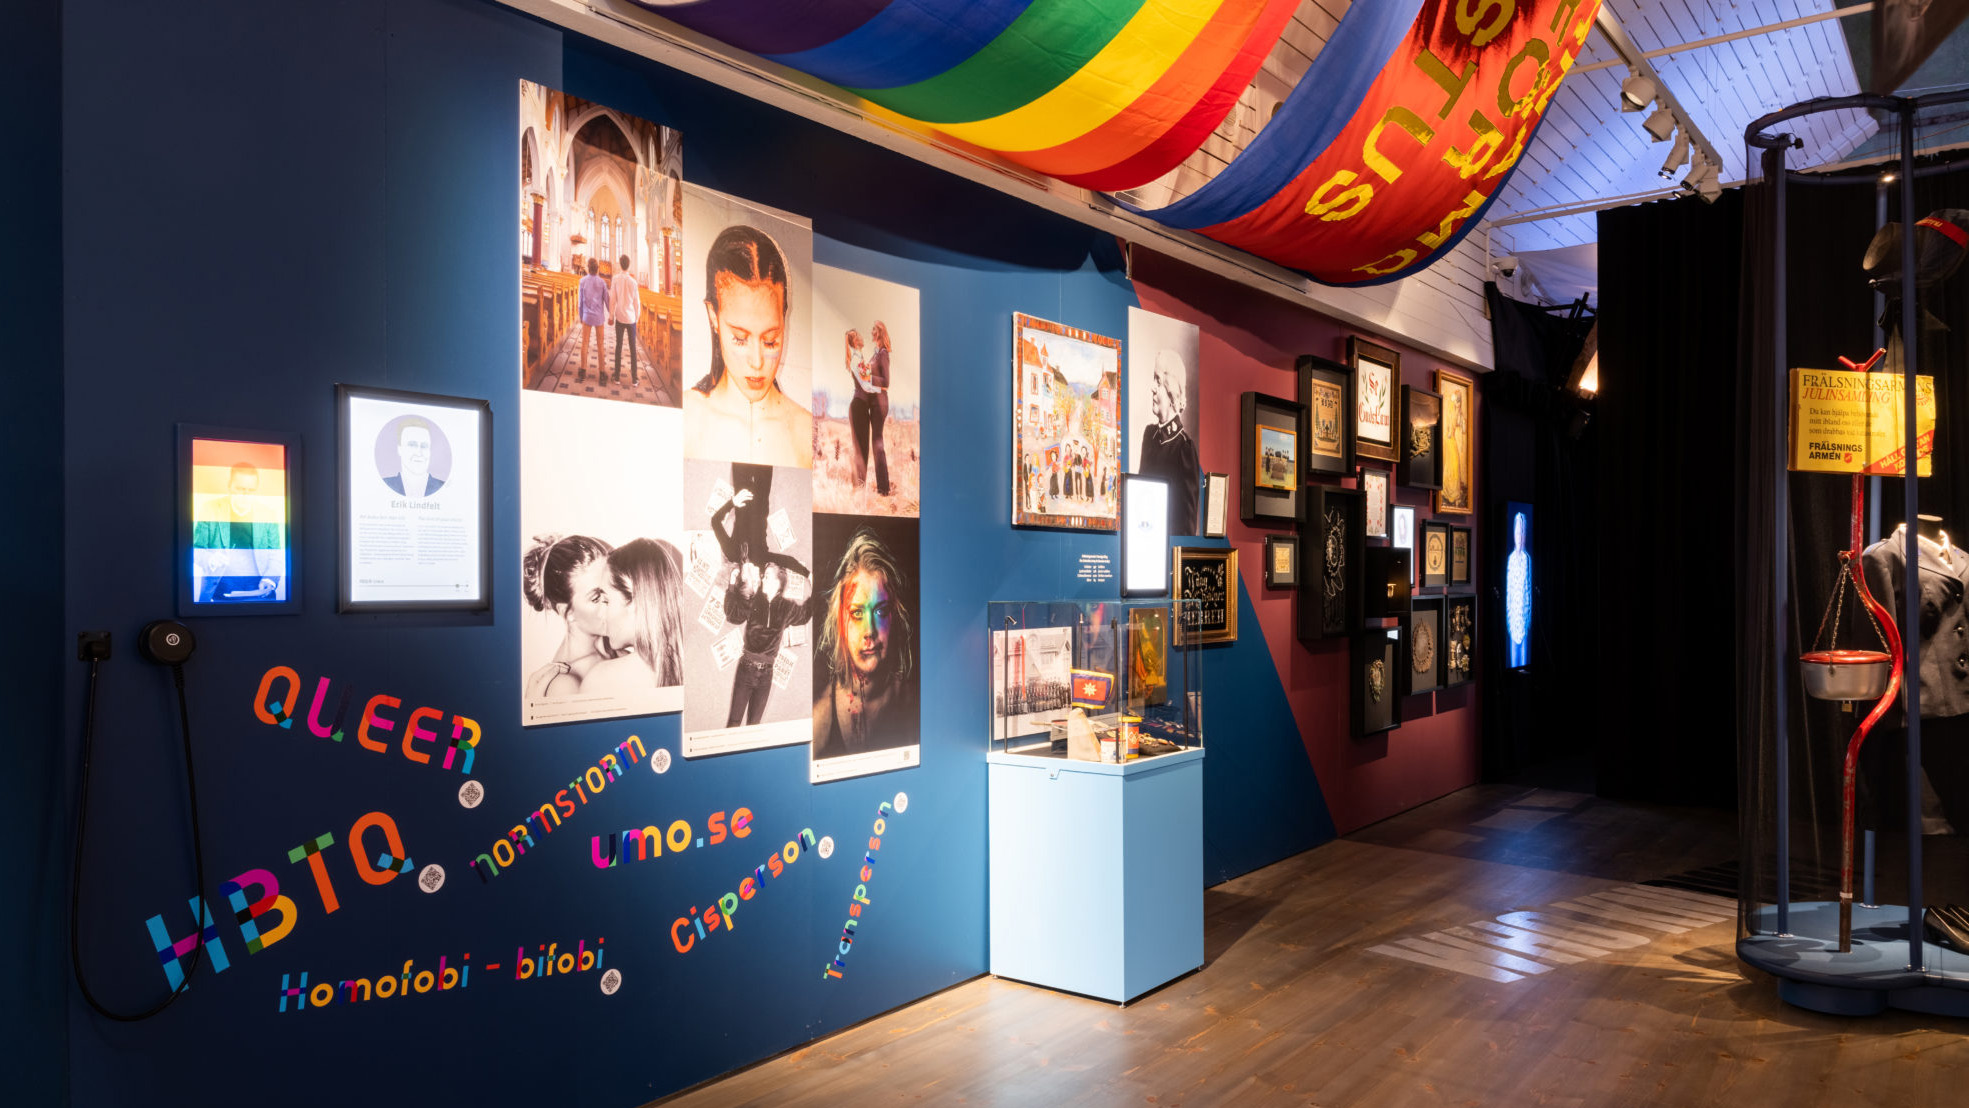 Foton och föremål syns på en blåmålad vägg, där också ord som rör HBTQ-frågor är uppsatta. I taket syns bland annat en regnbågsflagga.